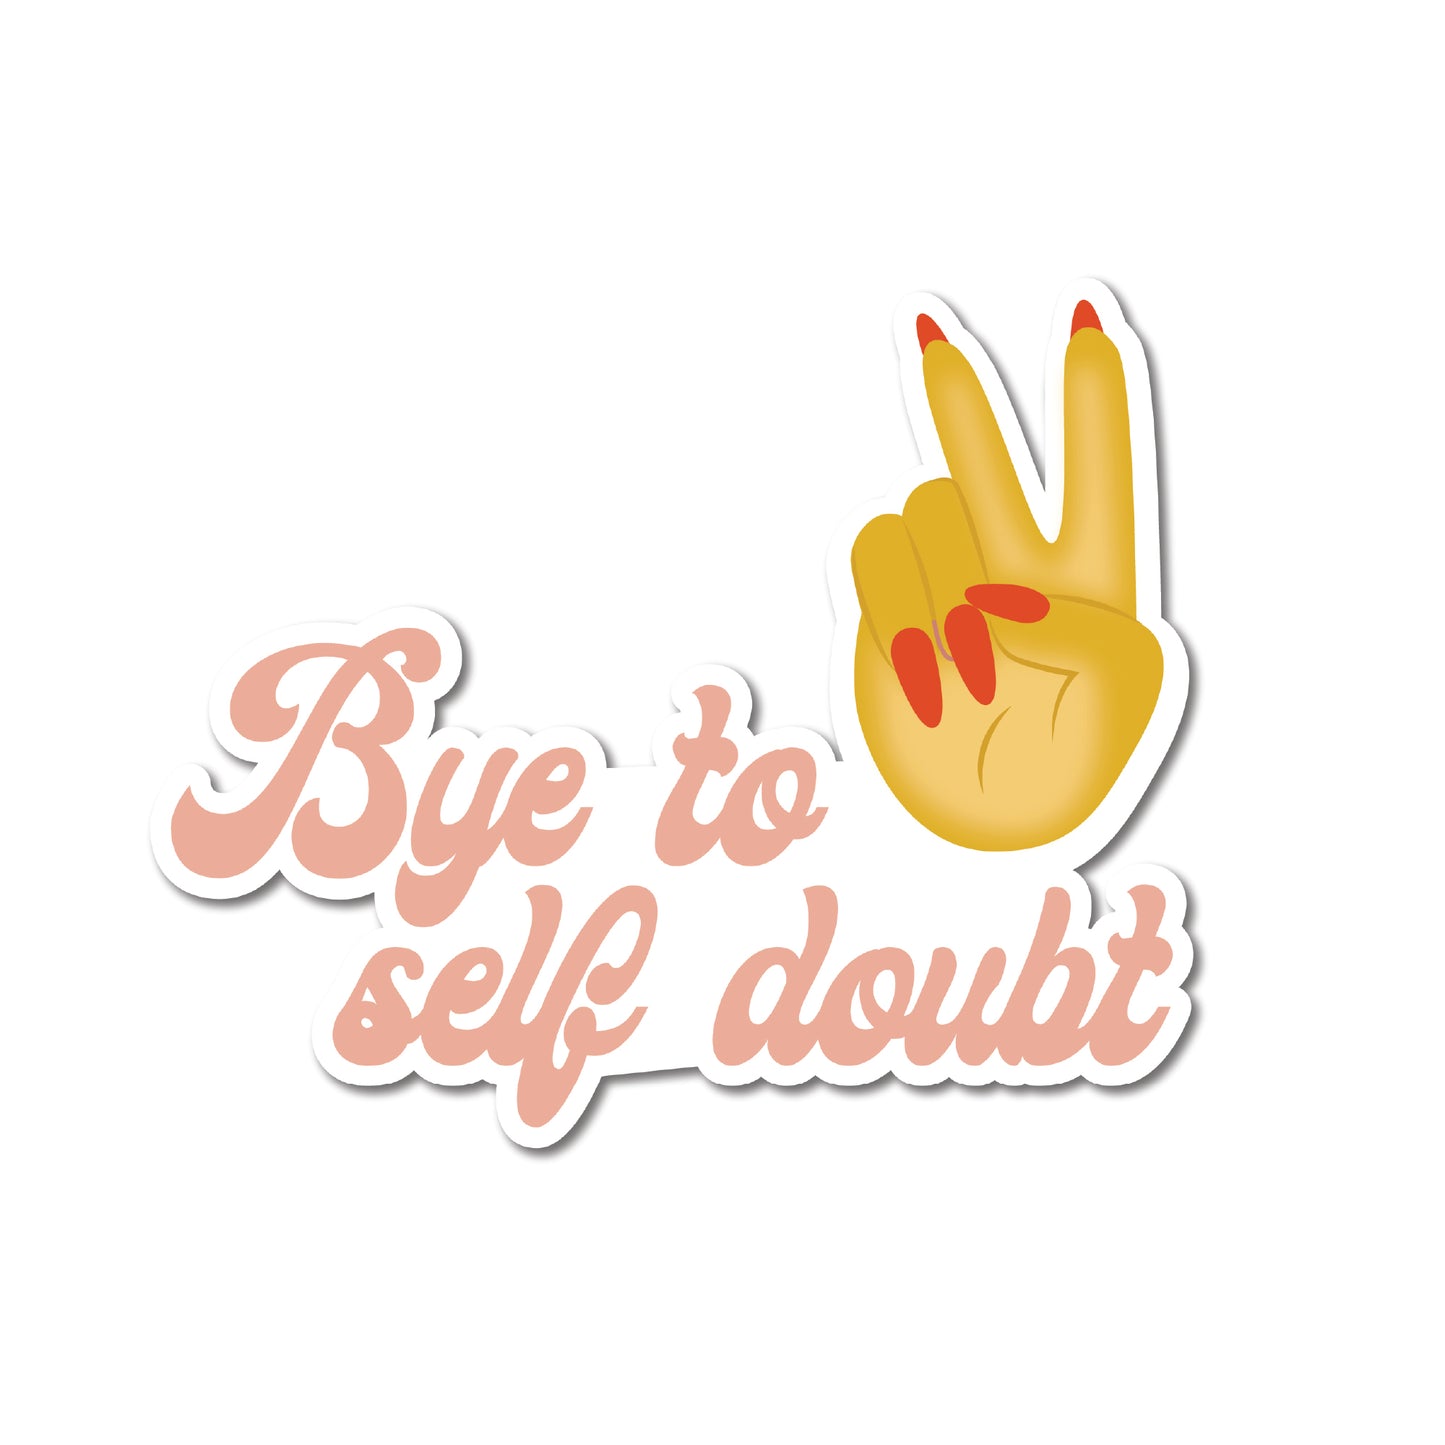 Bye self doubt sticker